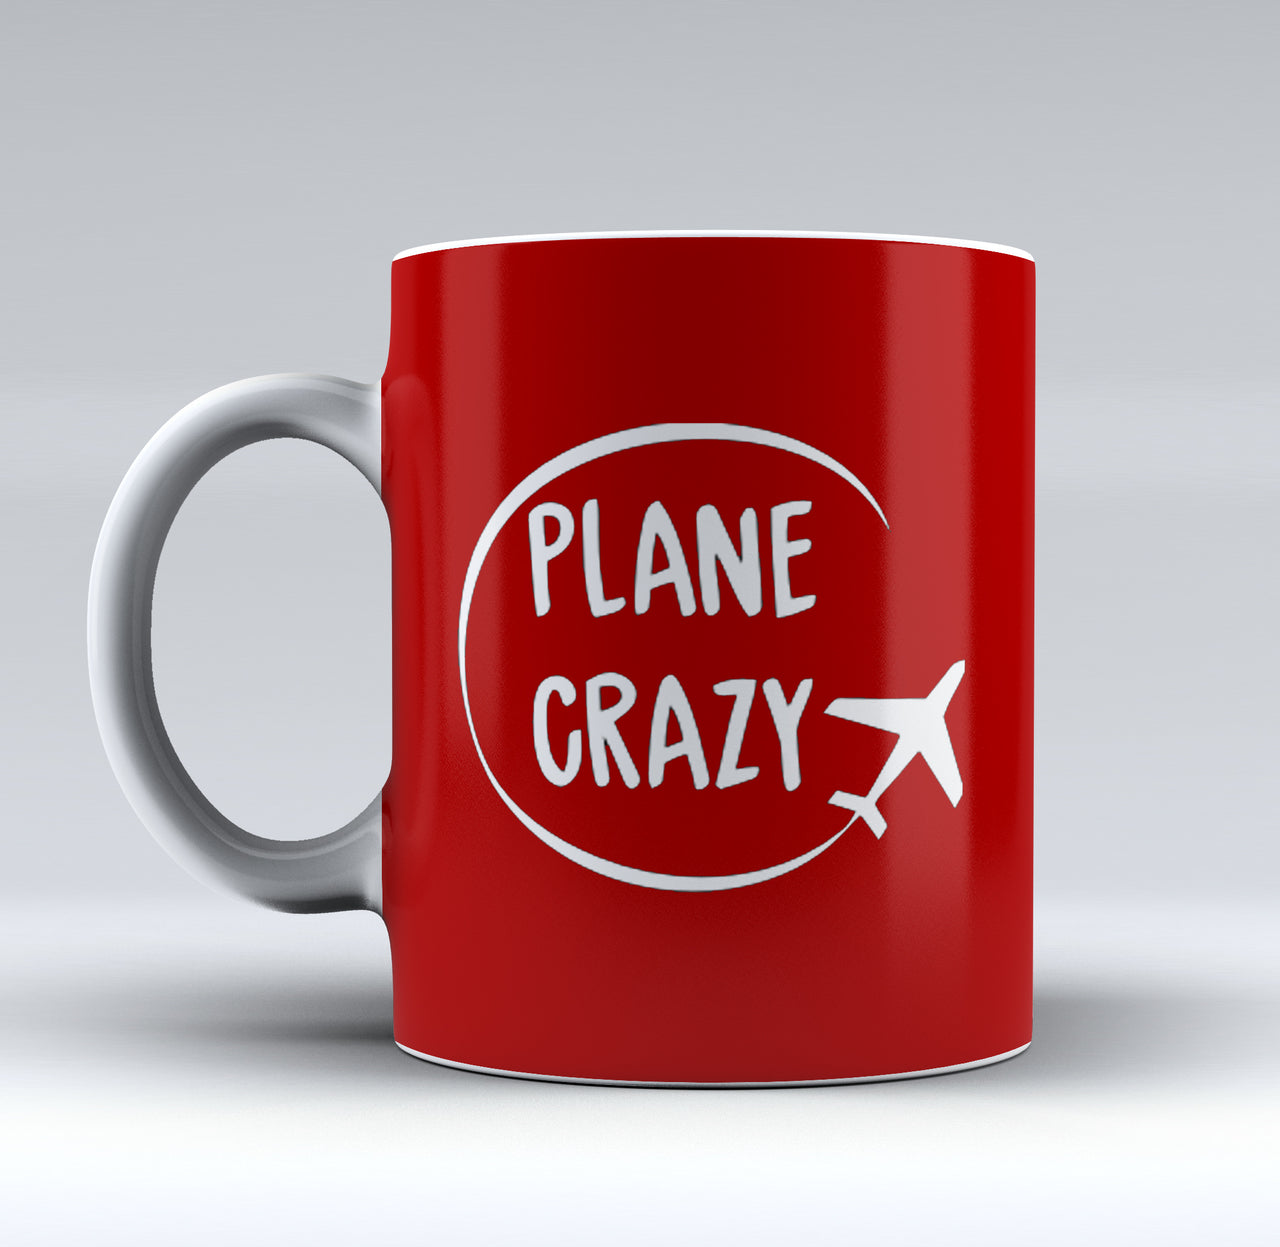 Plane Crazy Designed Mugs